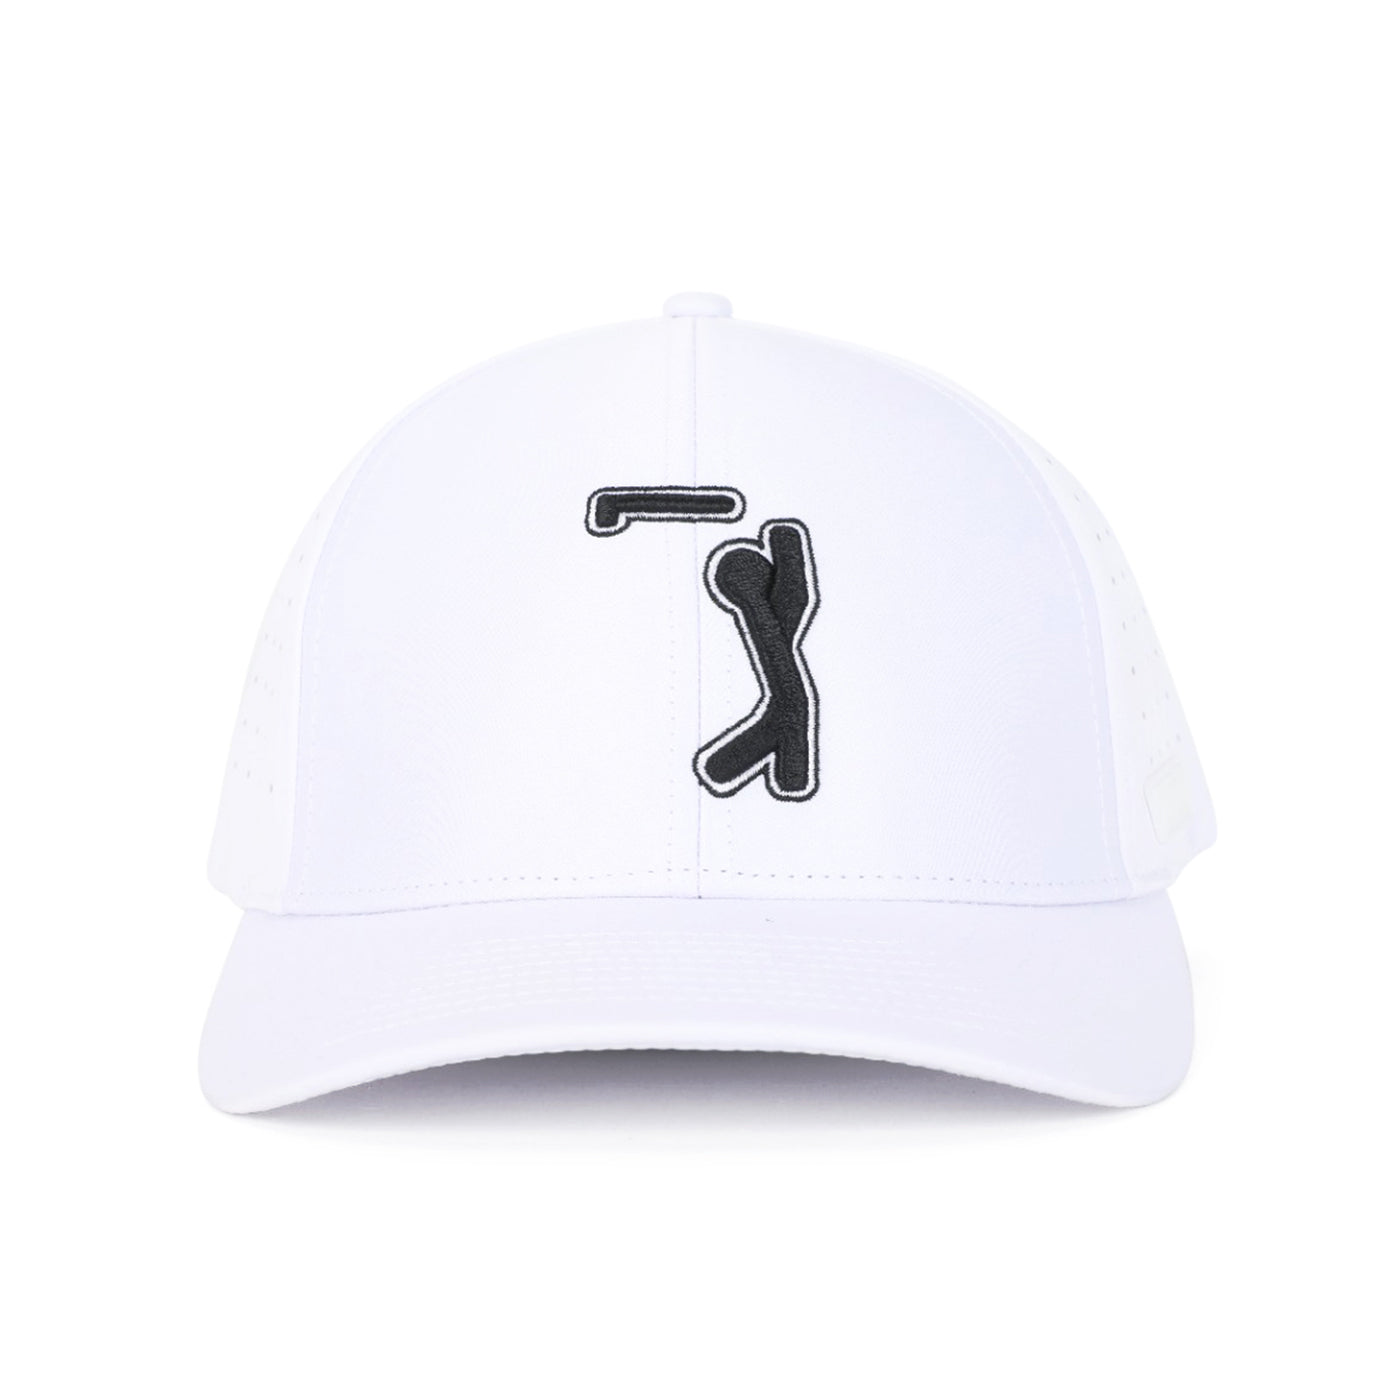 Bogeyman White - Performance Golf Hat - Stretch Fit